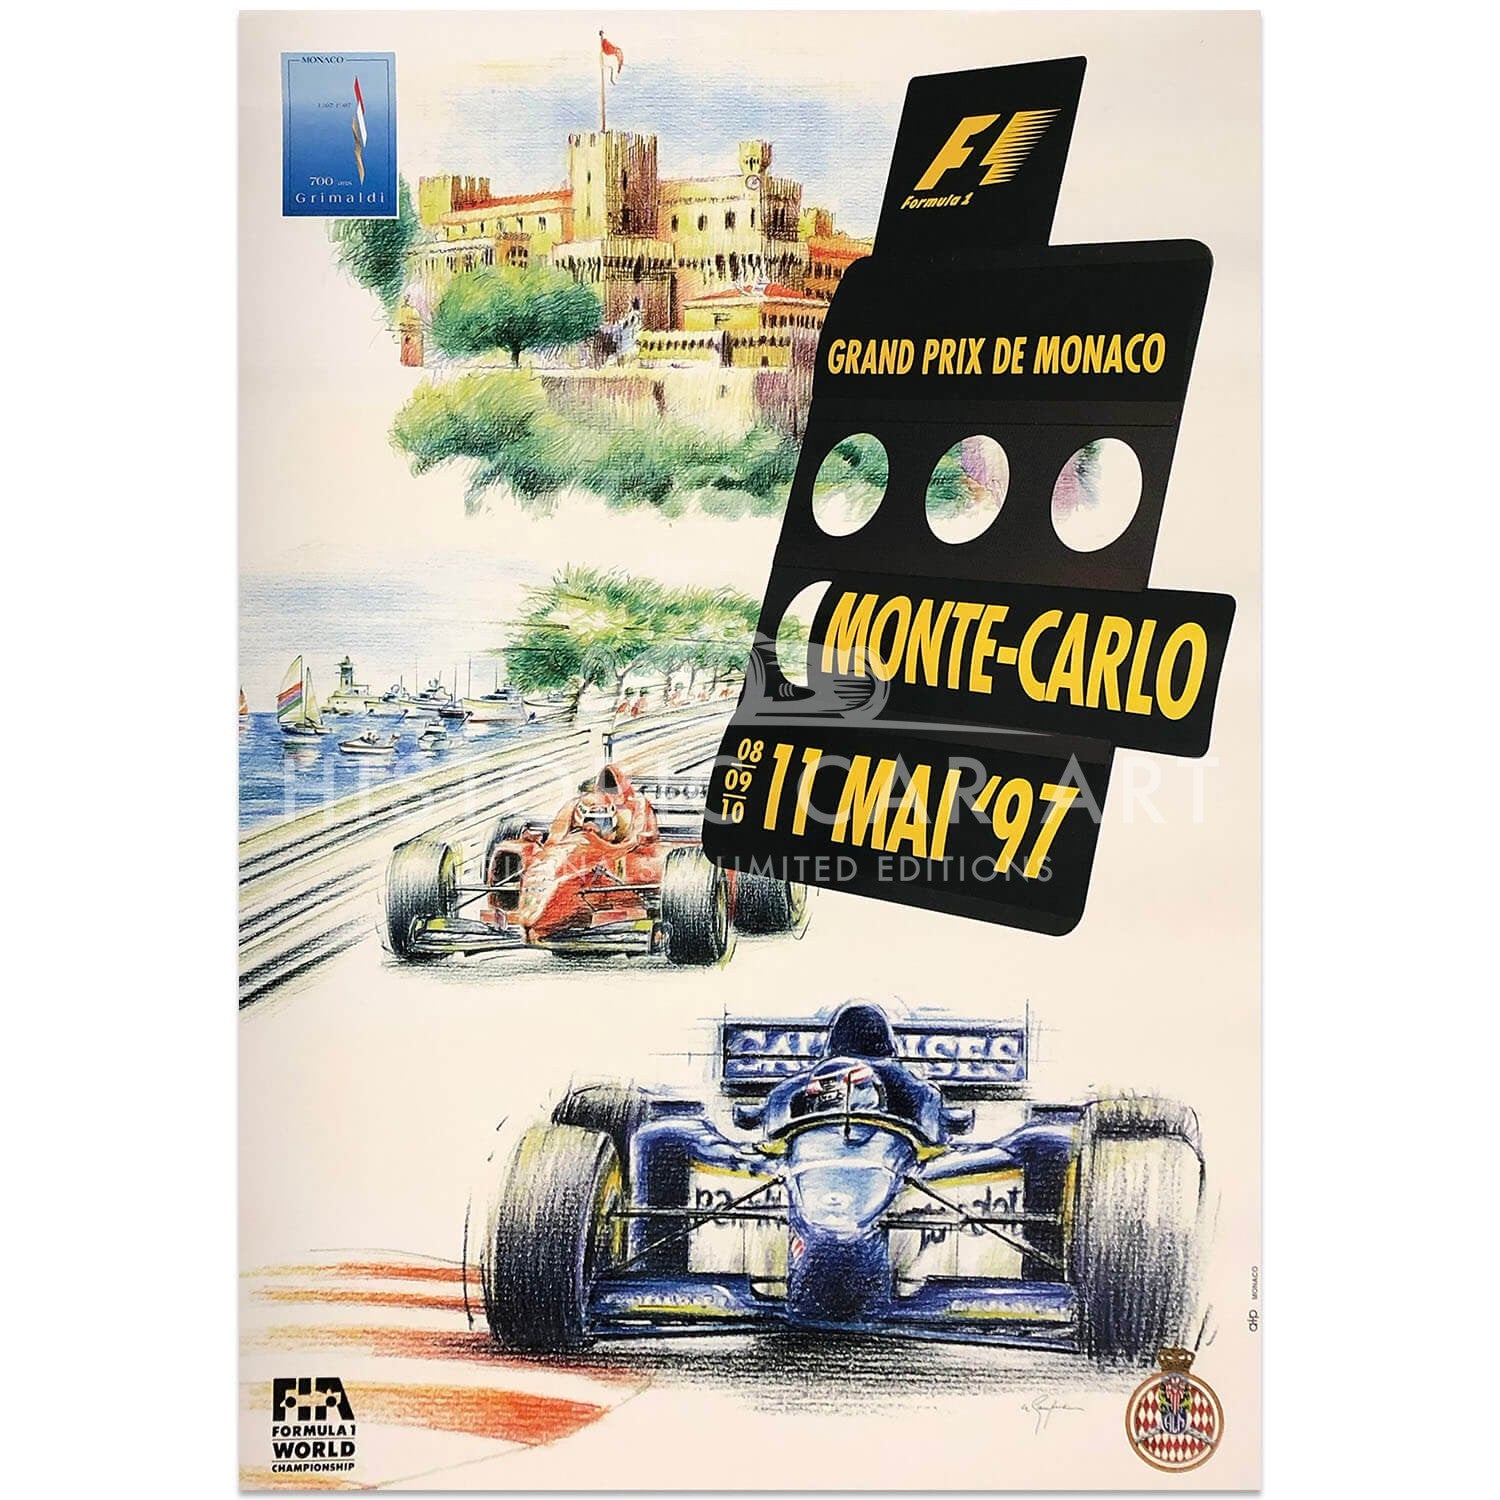 French | Monaco Grand Prix 1997 Original Poster